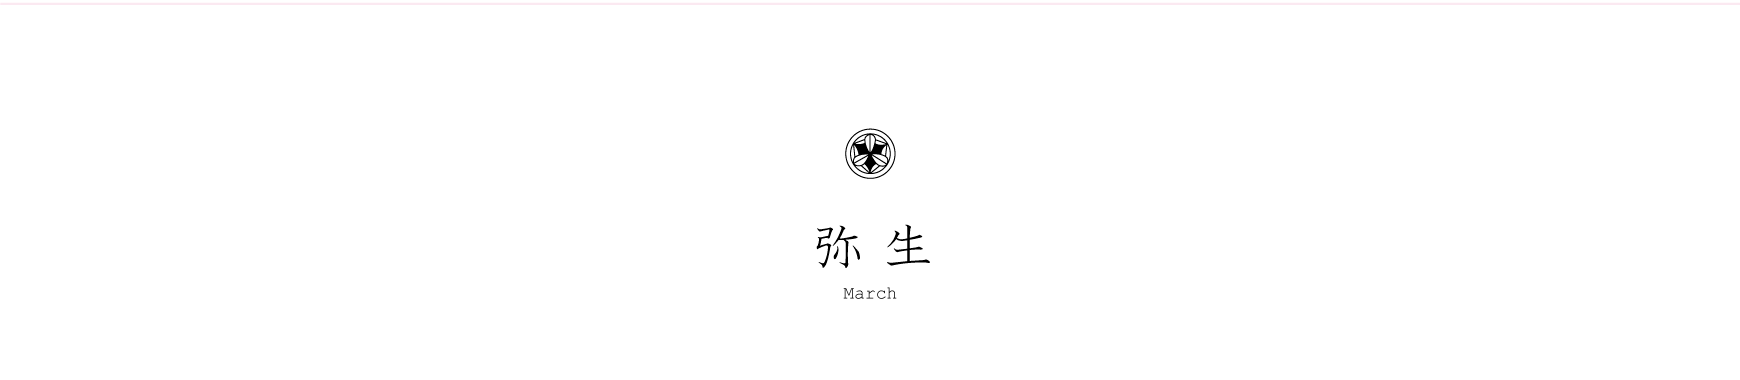 弁慶鮨 3月のお品書き 弥生 March